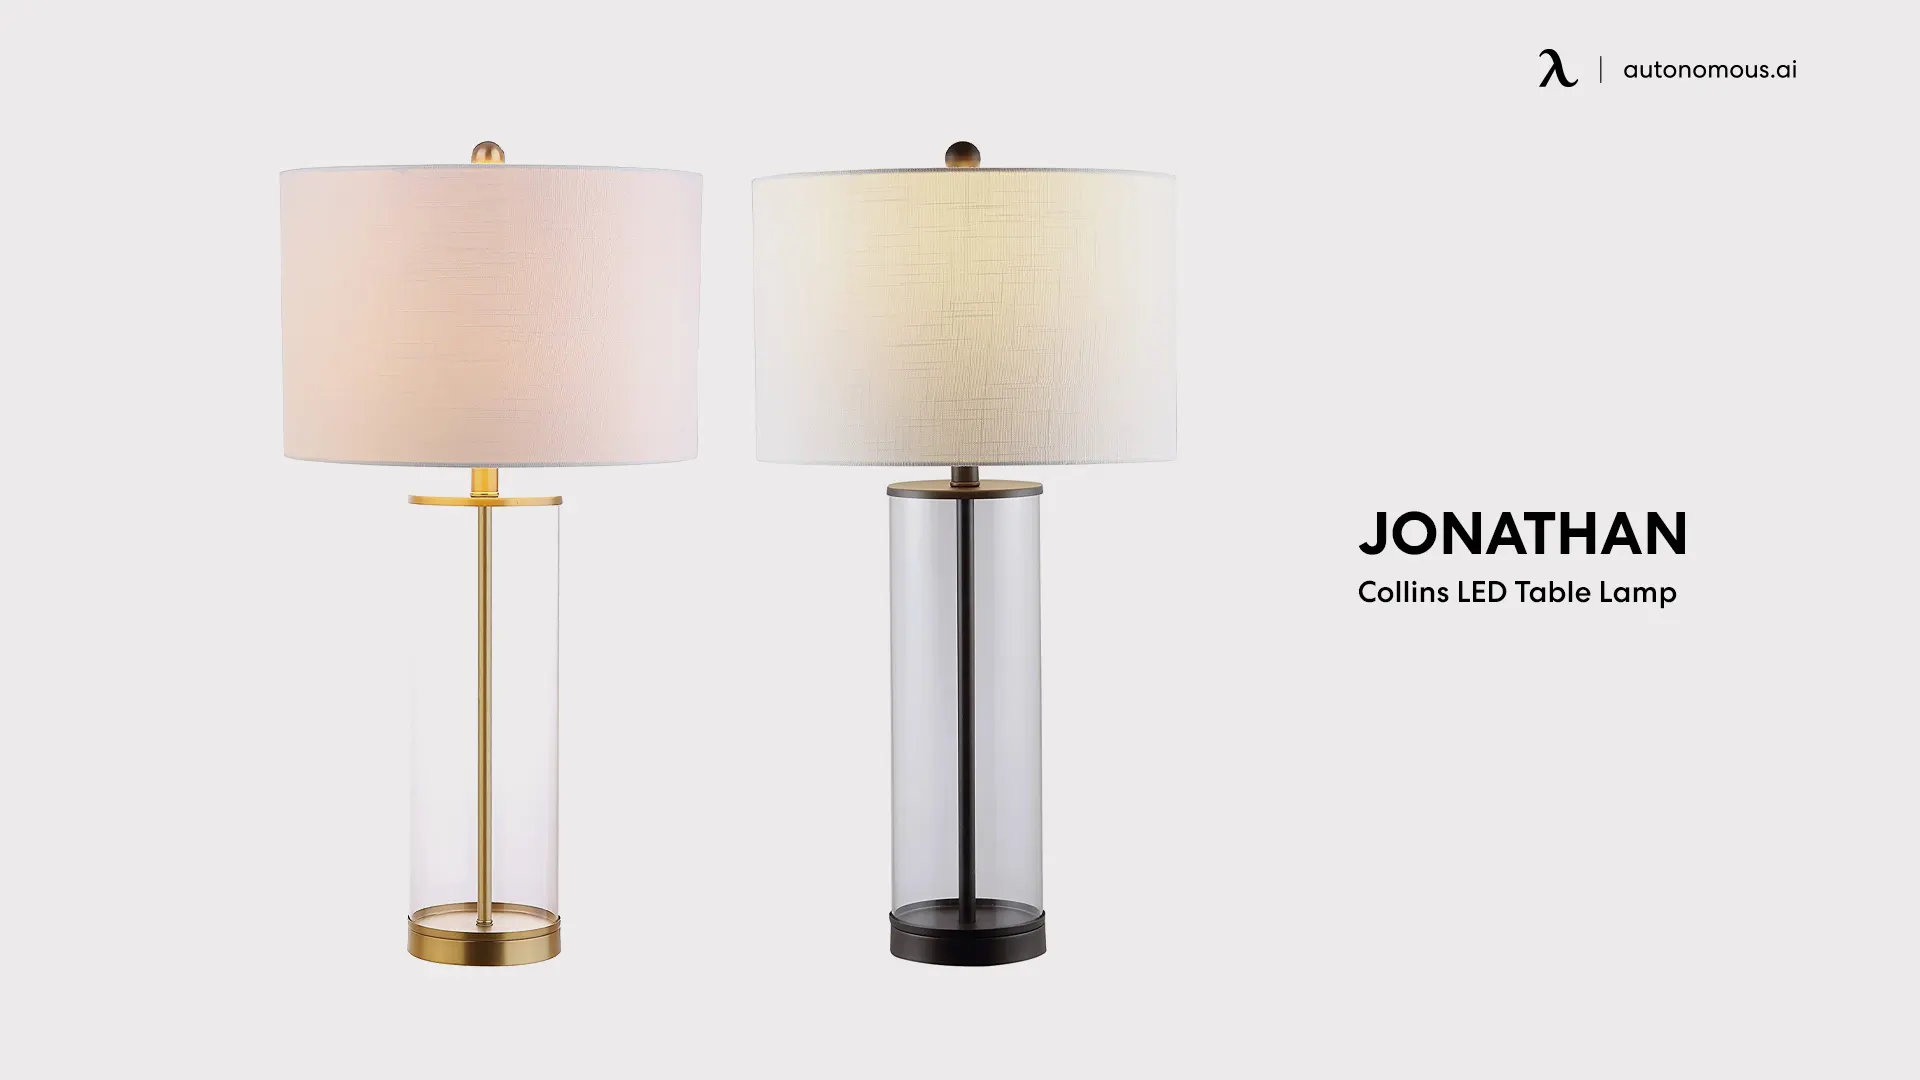 JONATHAN Collins LED Table Lamp